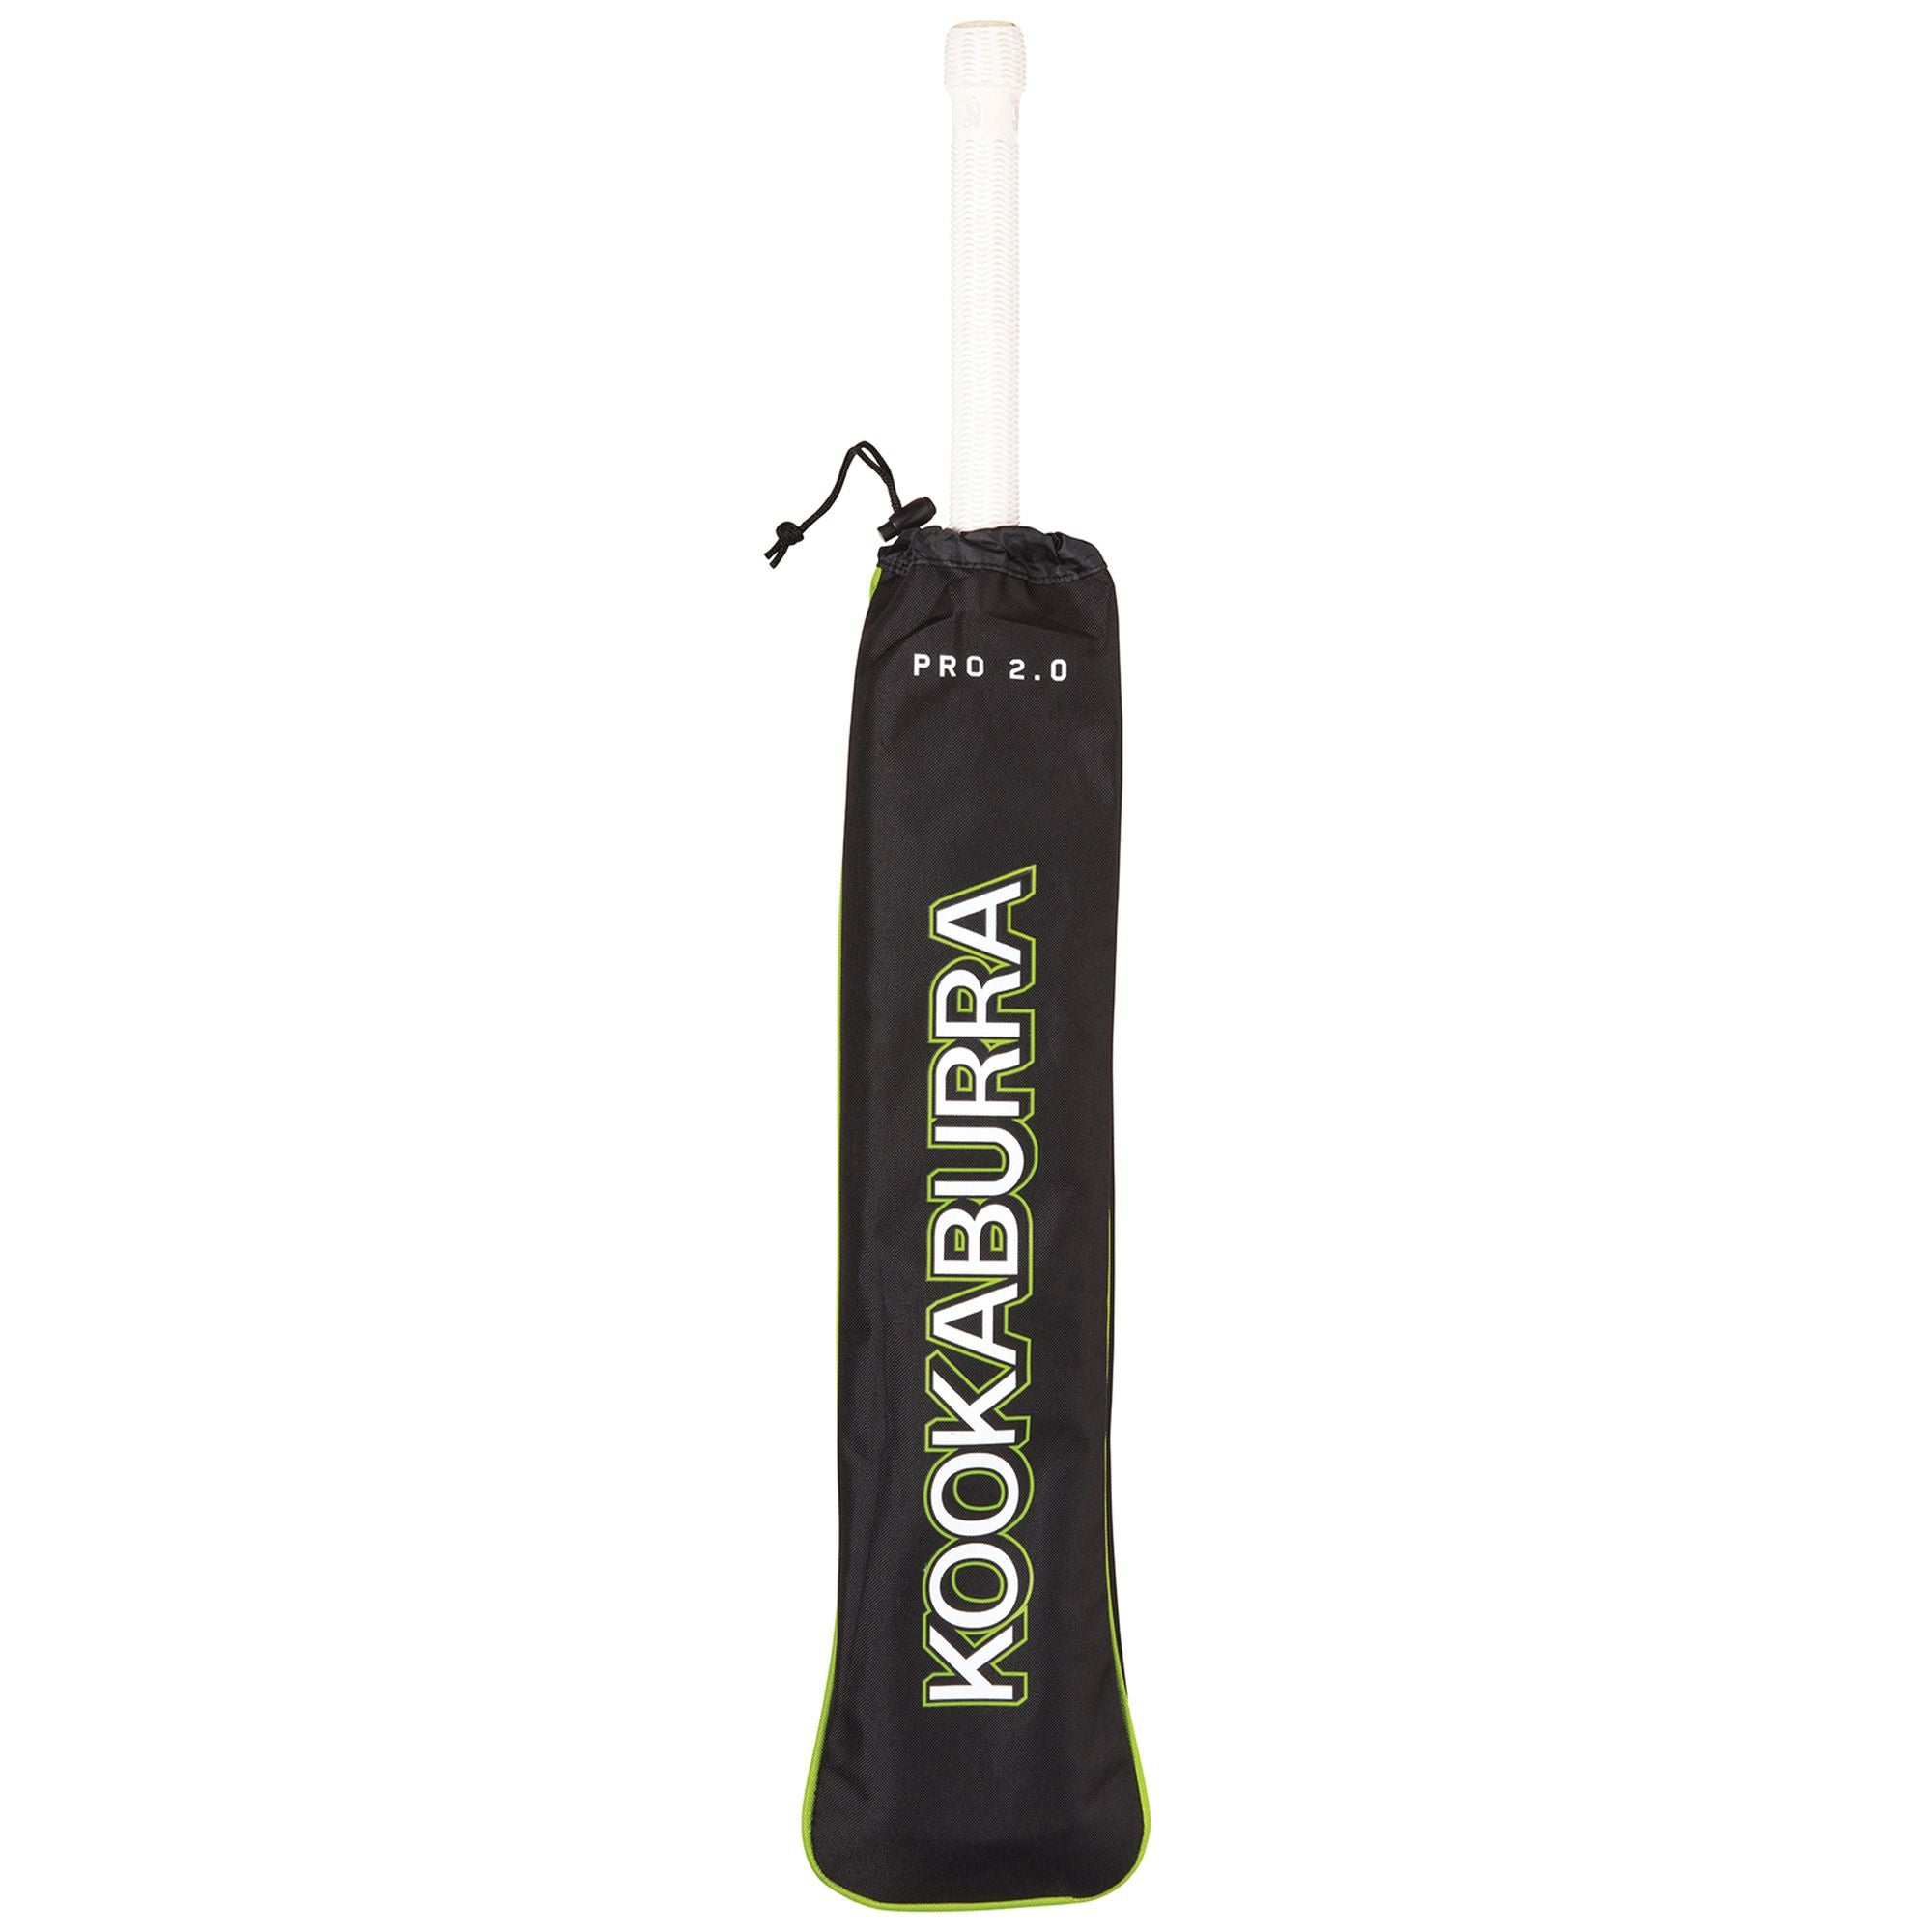 Kookaburra Pro 2.0 Cricket Bat Cover